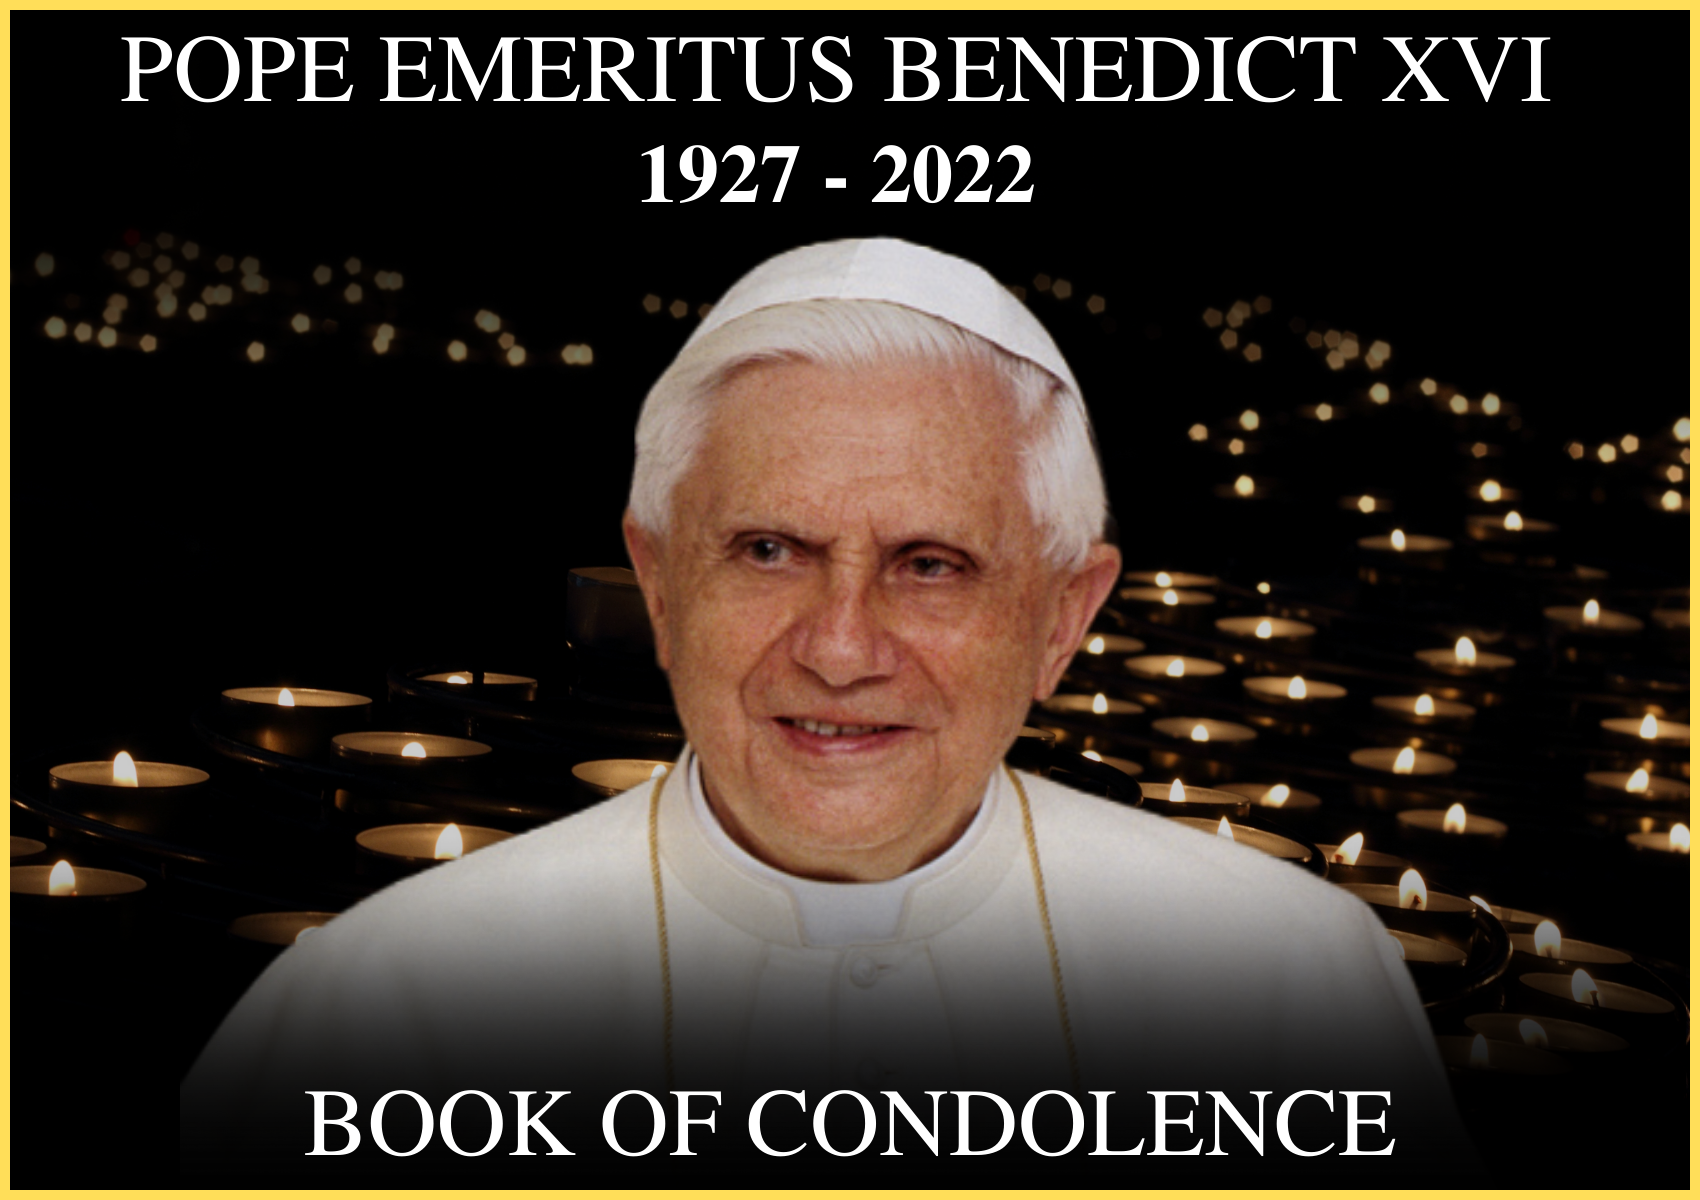 Book of Condolence for Pope Emeritus Benedict XVI